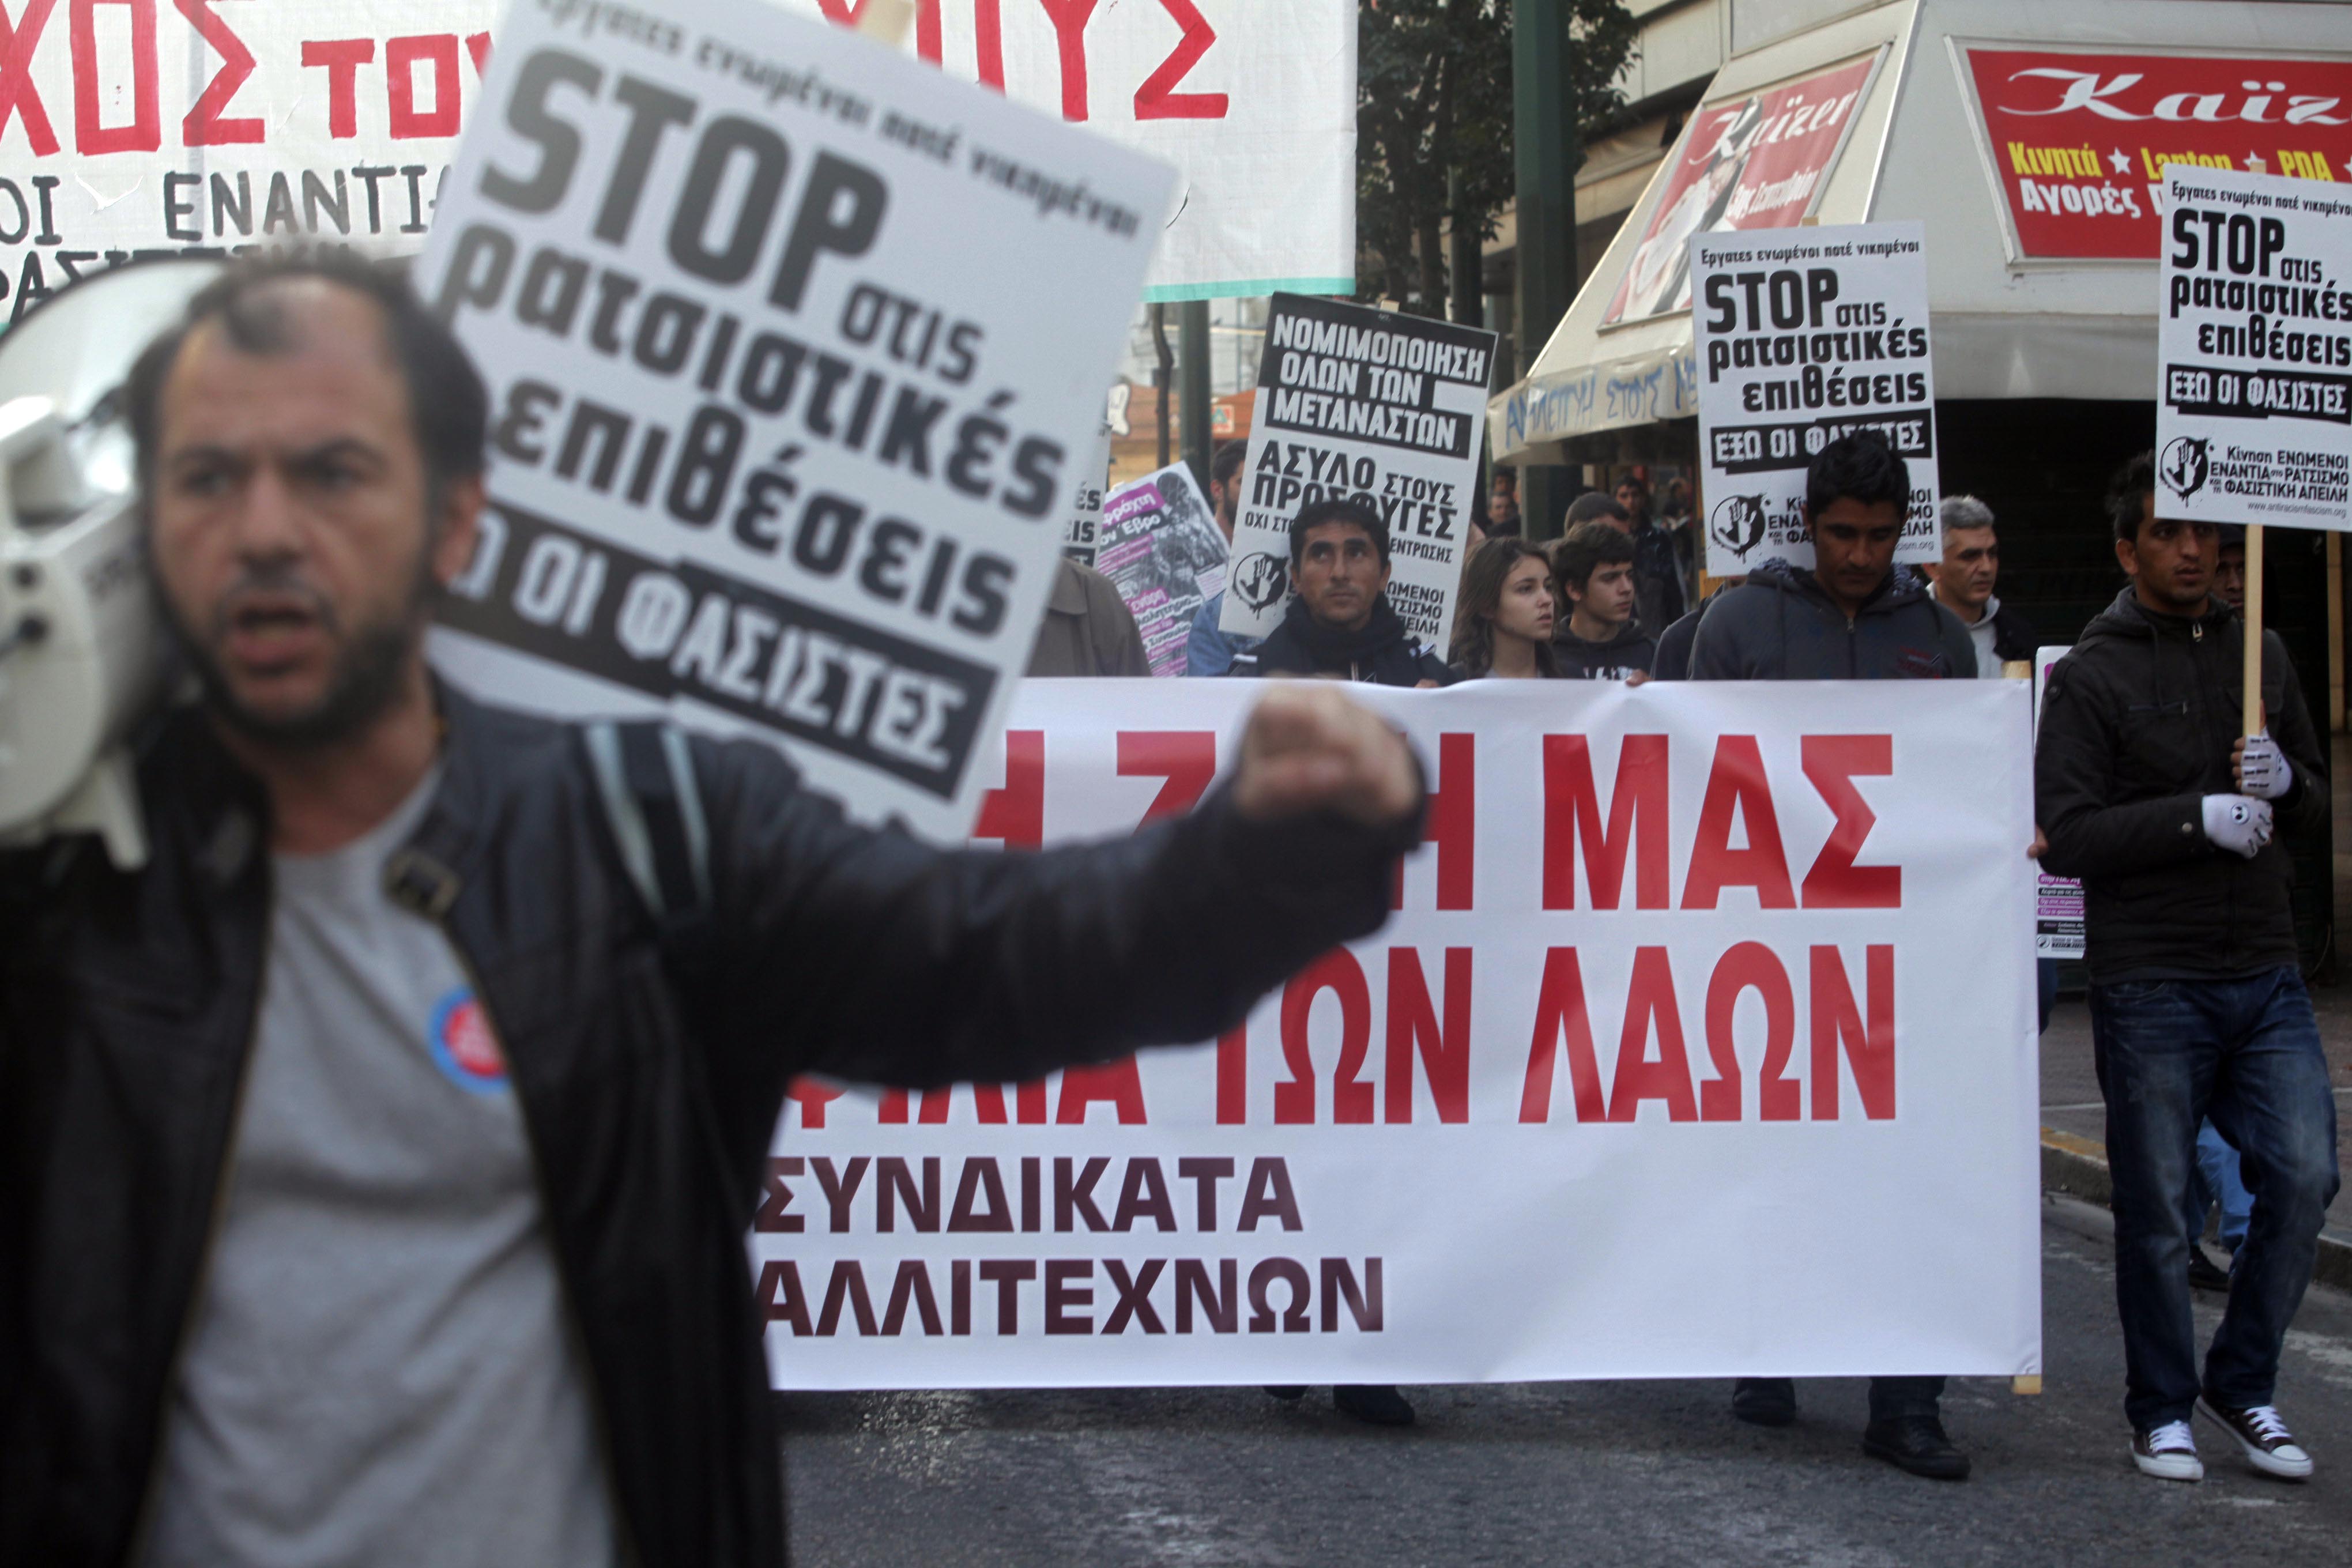 Αντιρατσιστική συγκέντρωση στο κέντρο της Αθήνας